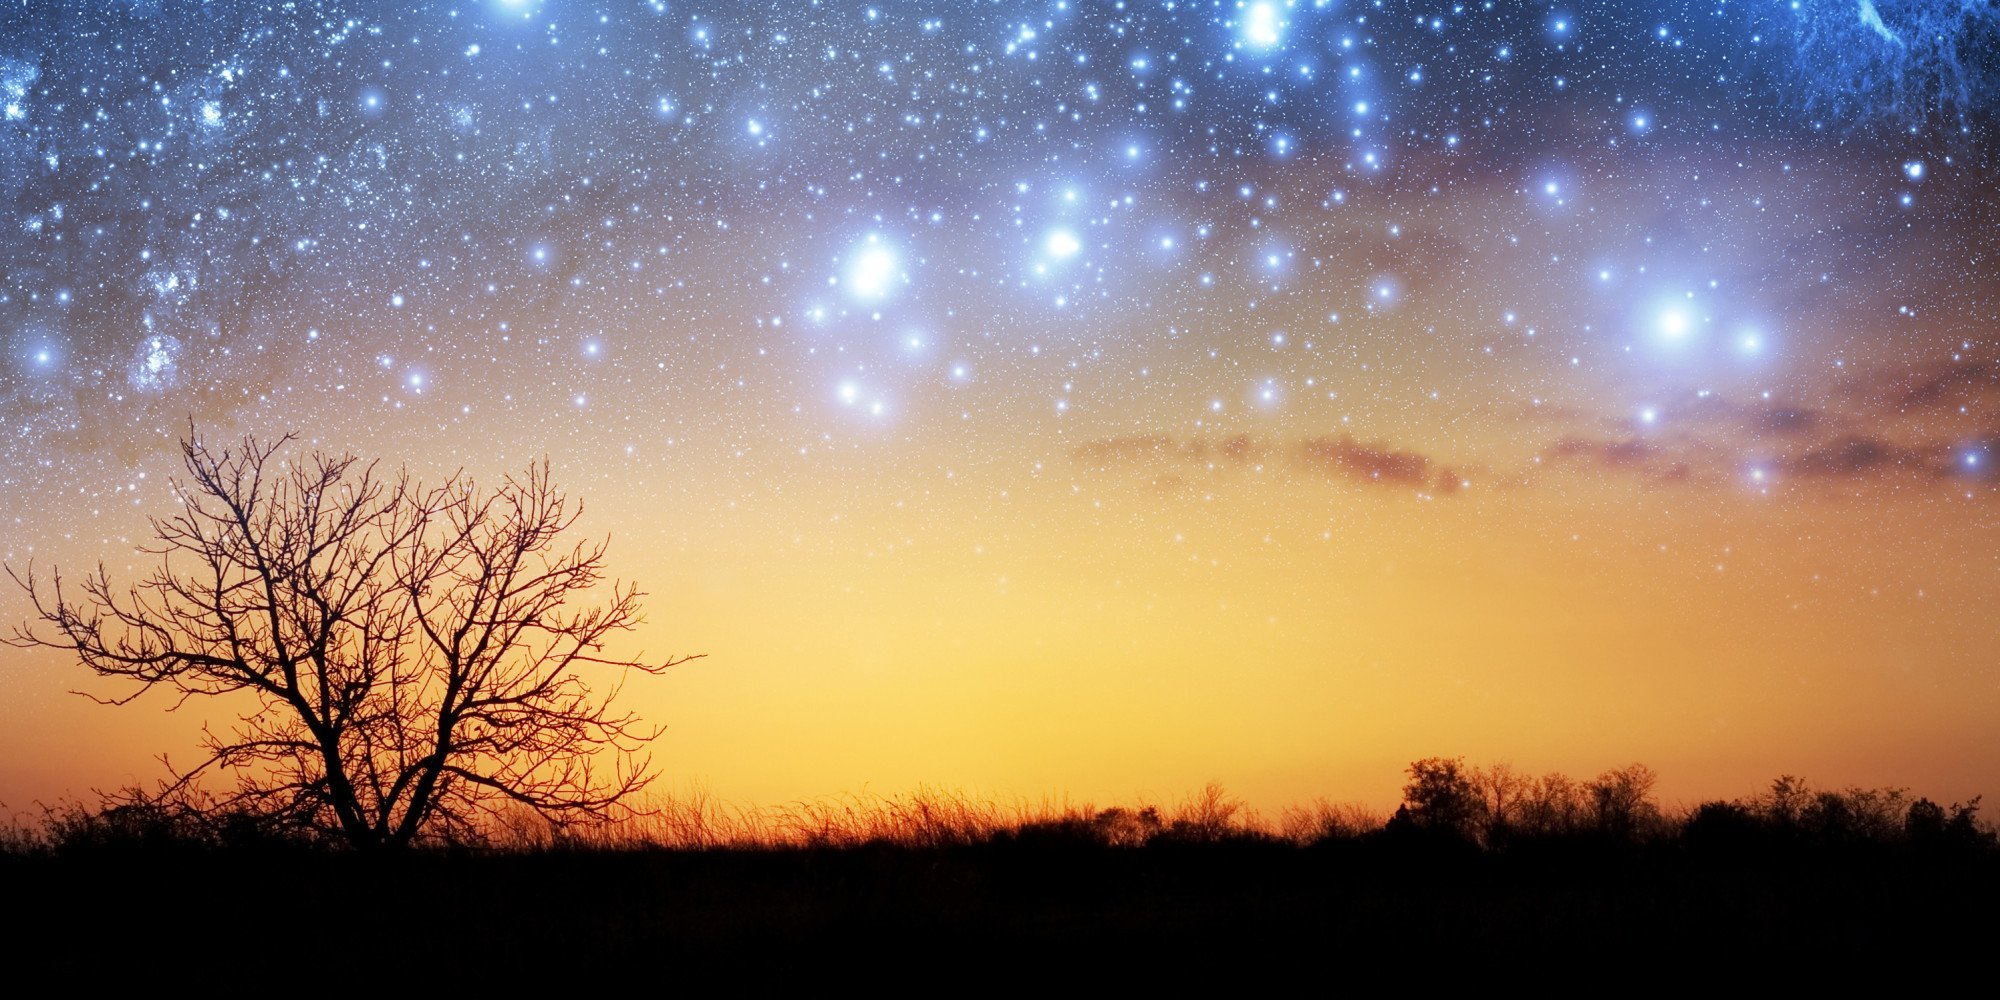 Светлеет небо видней дорога. Звезда с неба. Звездное небо. Ночное небо со звездами. Утренняя звезда на небе на рассвете.